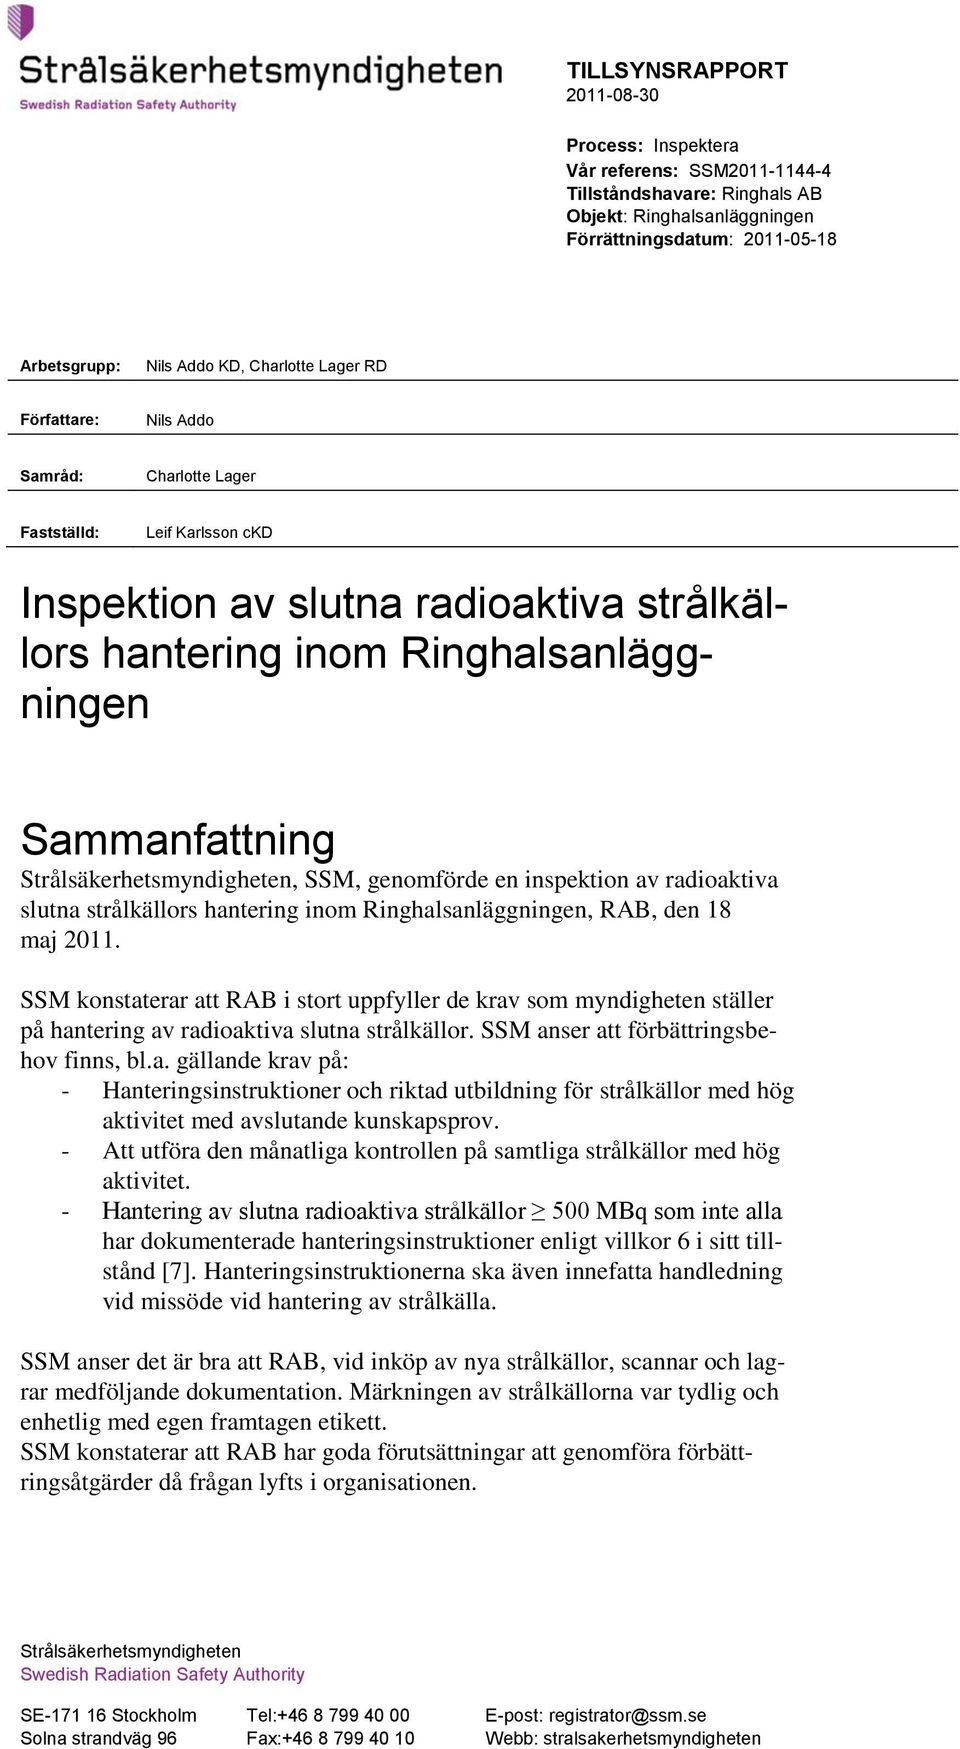 Strålsäkerhetsmyndigheten, SSM, genomförde en inspektion av radioaktiva slutna strålkällors hantering inom Ringhalsanläggningen, RAB, den 18 maj 2011.